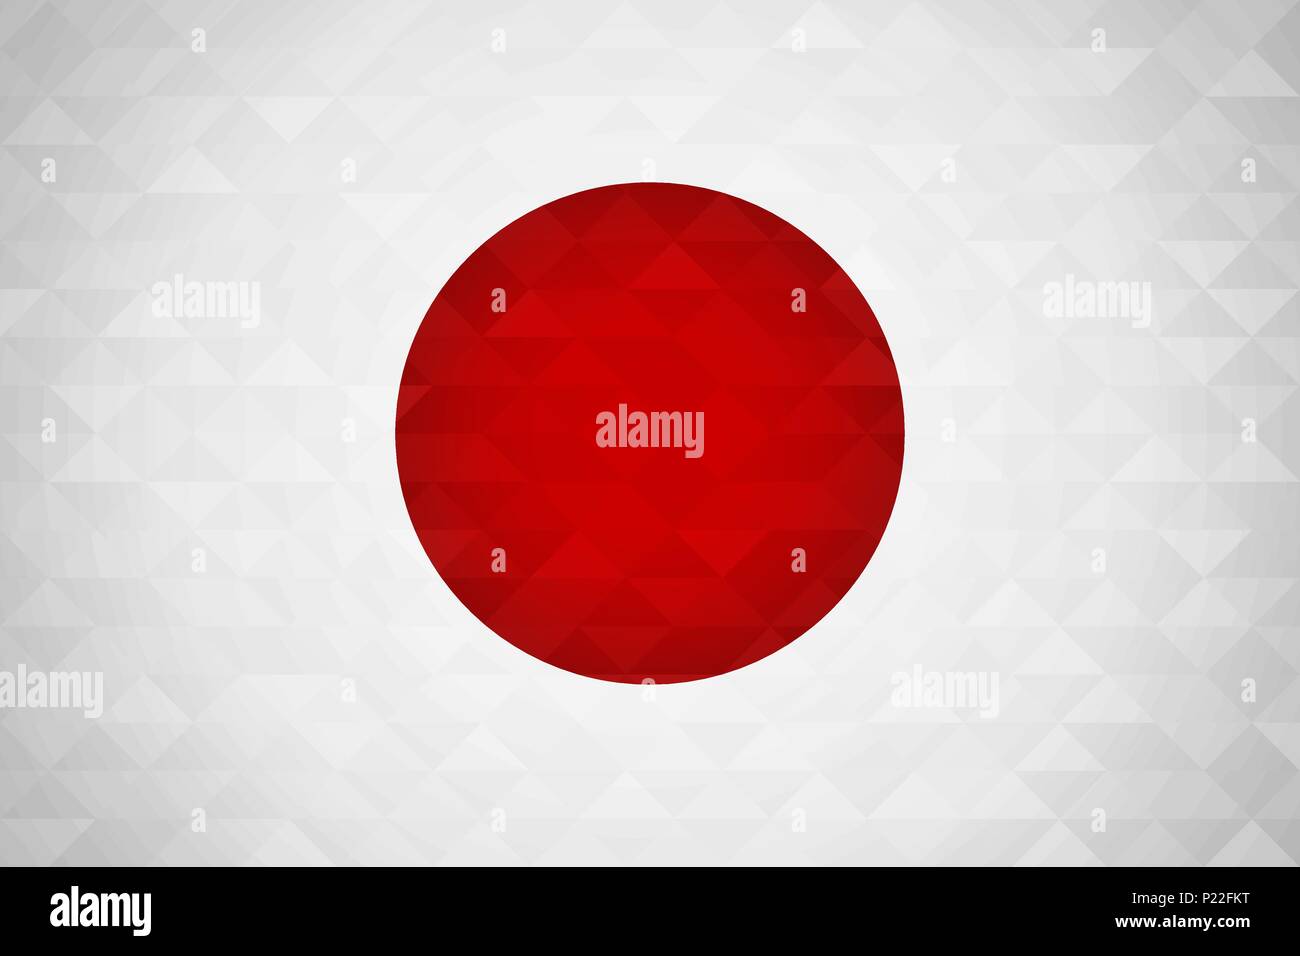 Japan Flagge für besondere land Veranstaltung mit geometrischen Dreieck Hintergrund. Internationalen japanischen Nation Vorlage. EPS 10 Vektor. Stock Vektor